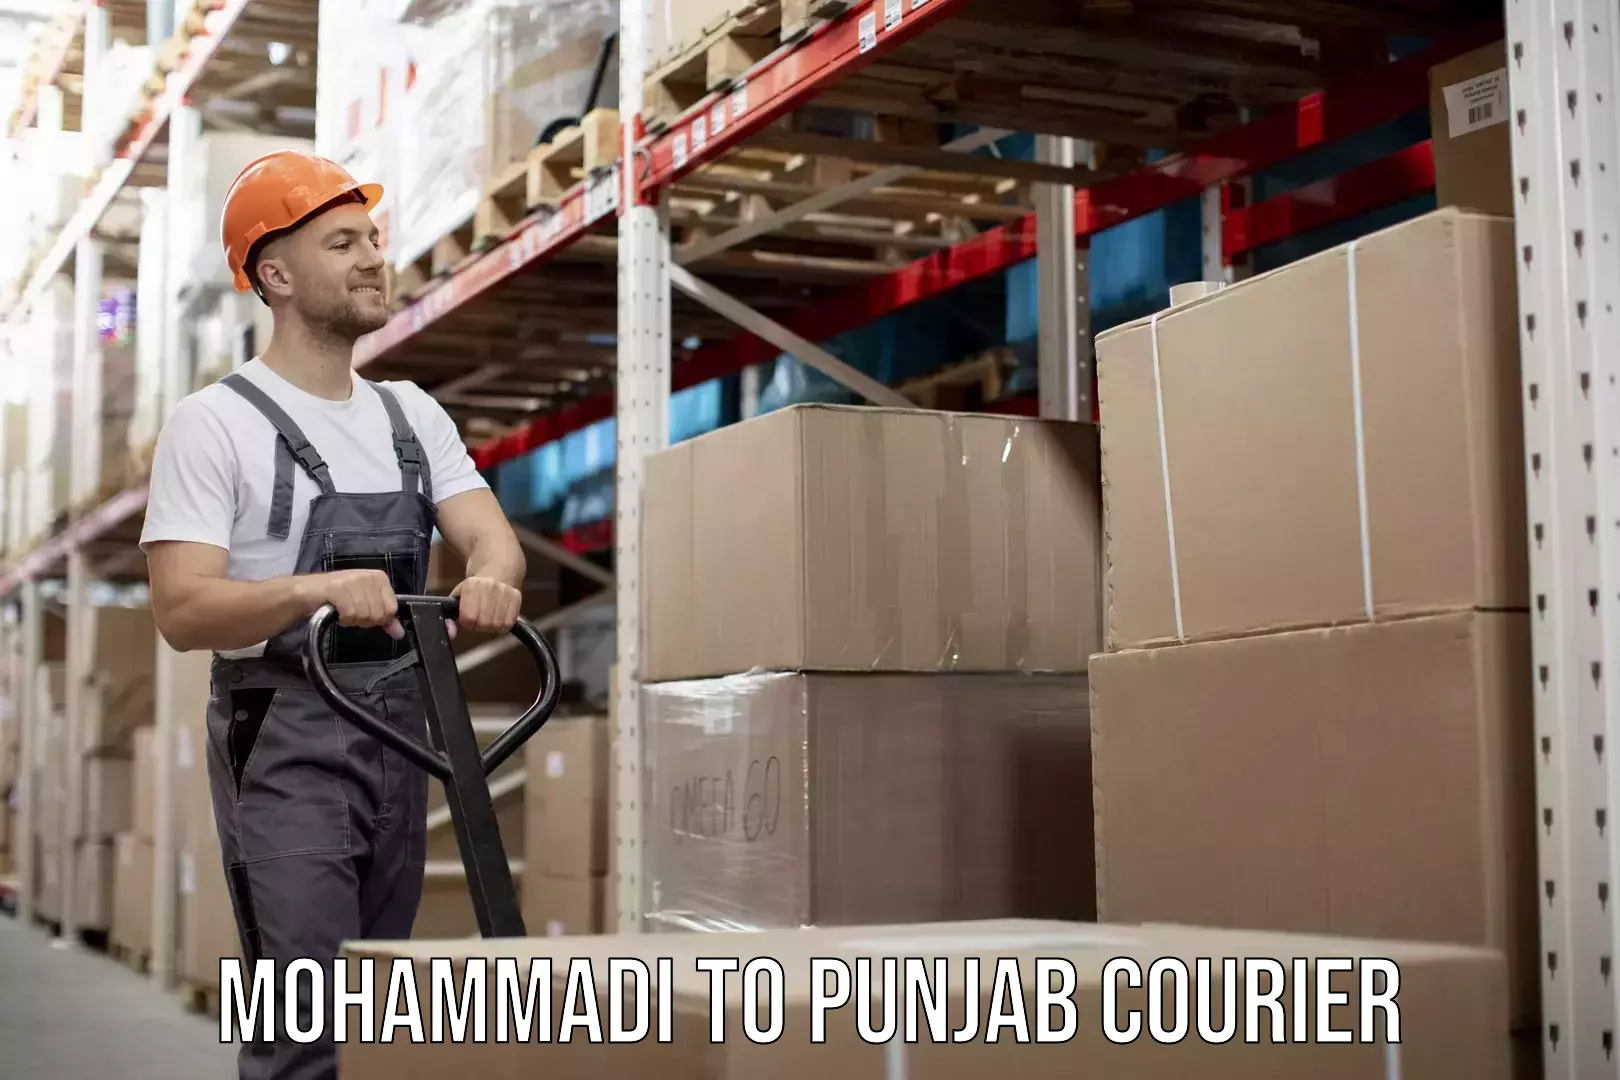 Furniture moving experts Mohammadi to Punjab